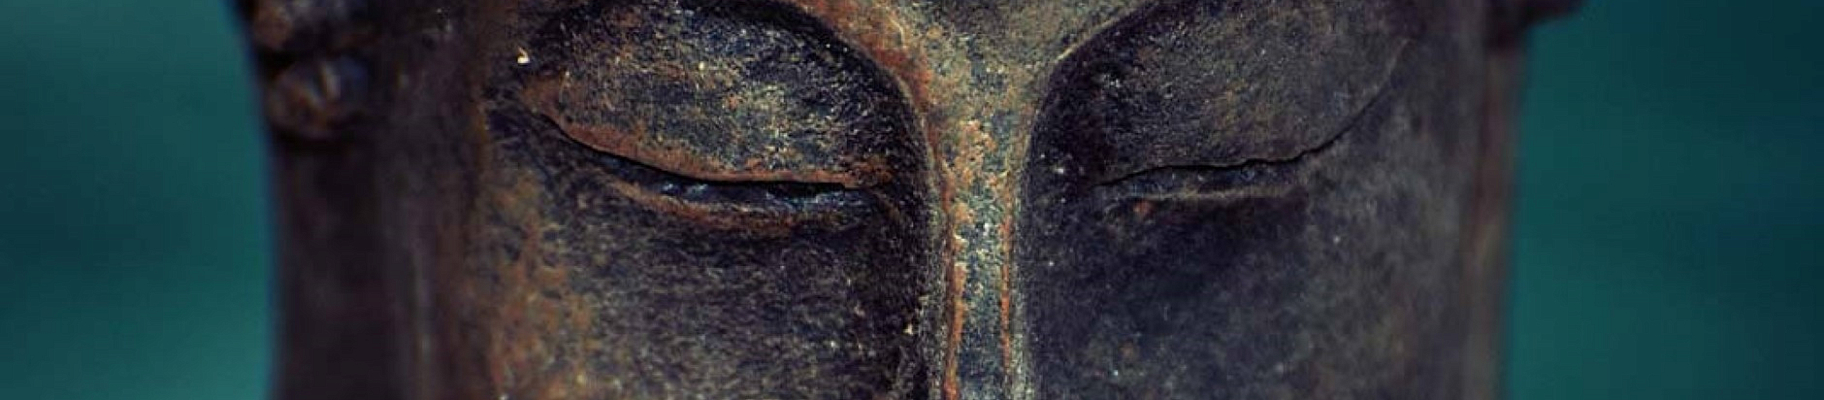 Как настроиться на медитацию. 10 правил буддийского монаха Бханте Джи